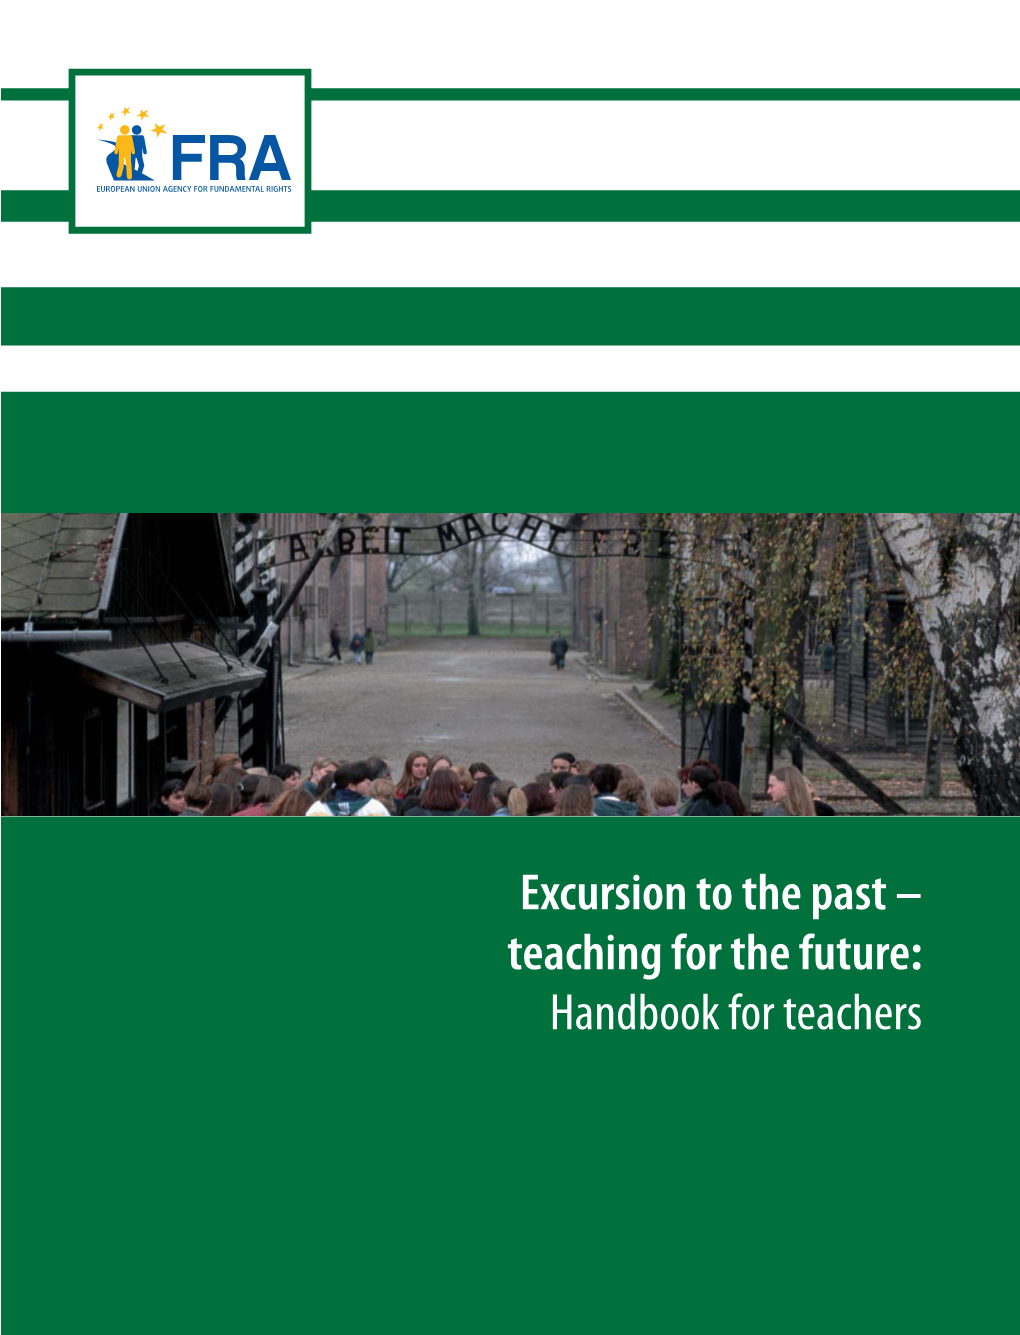 FRA Handbook for Teachers